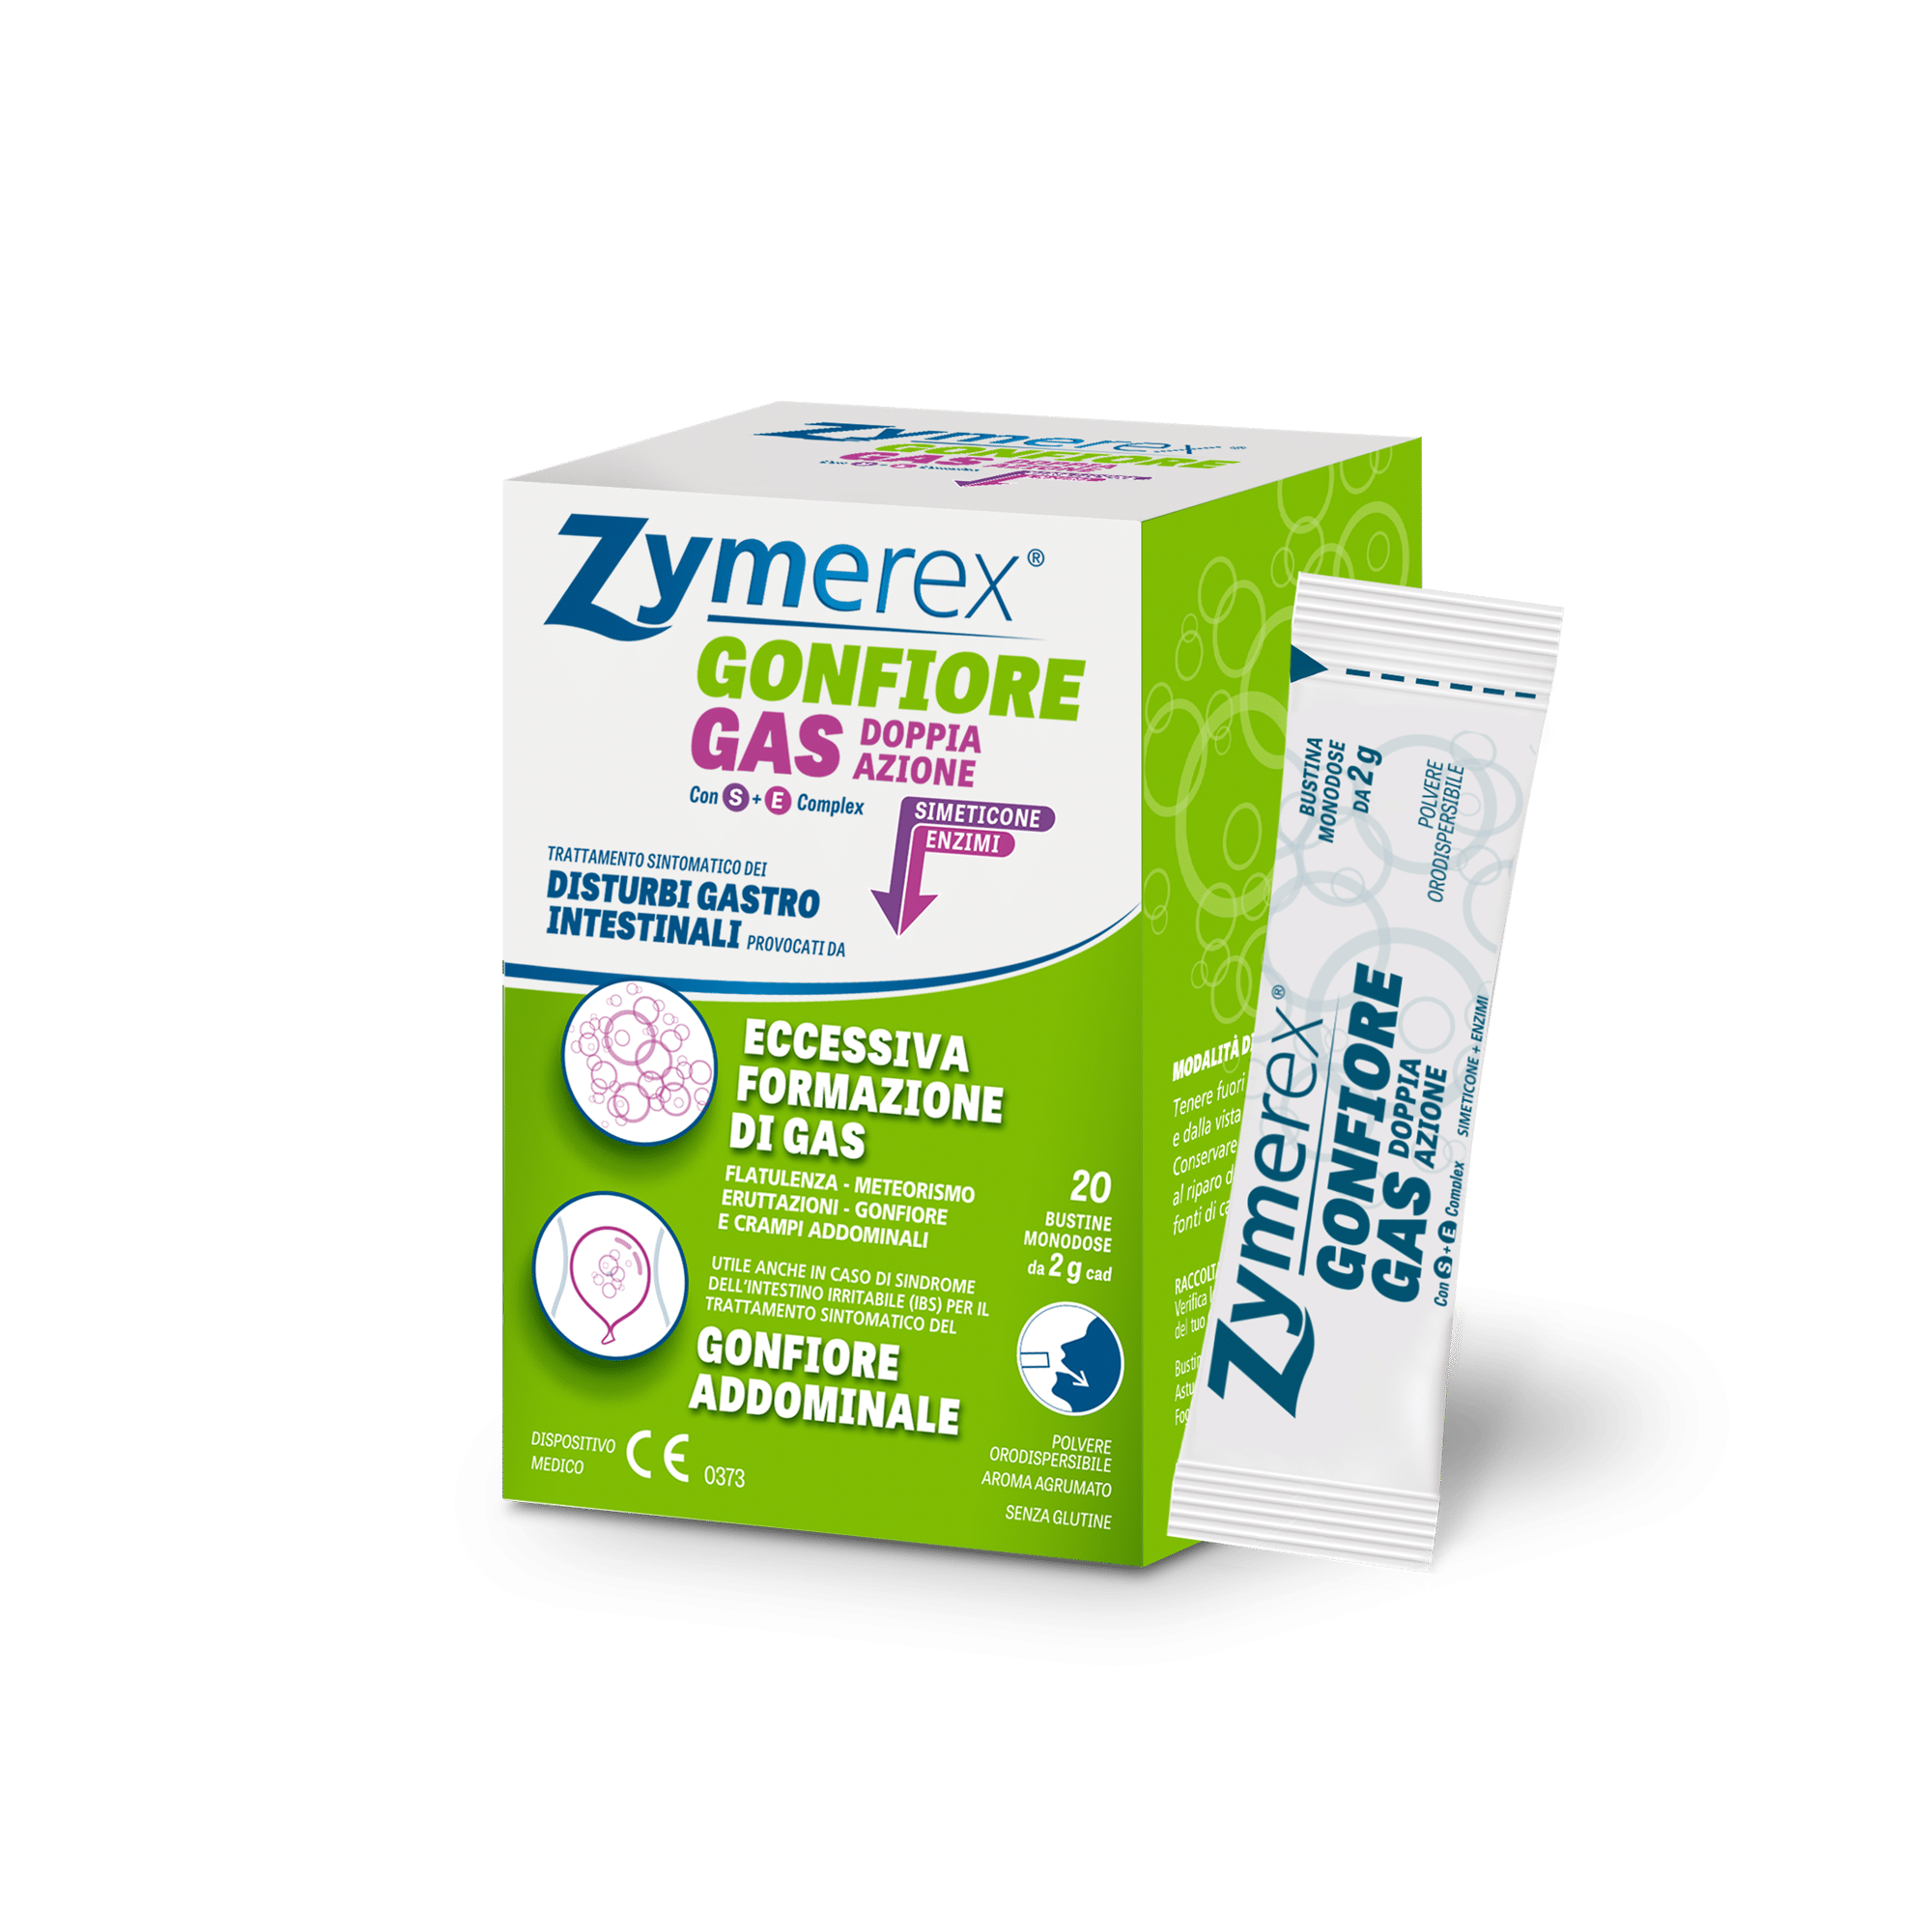 zymerex gas doppia azione confezione e contenuto